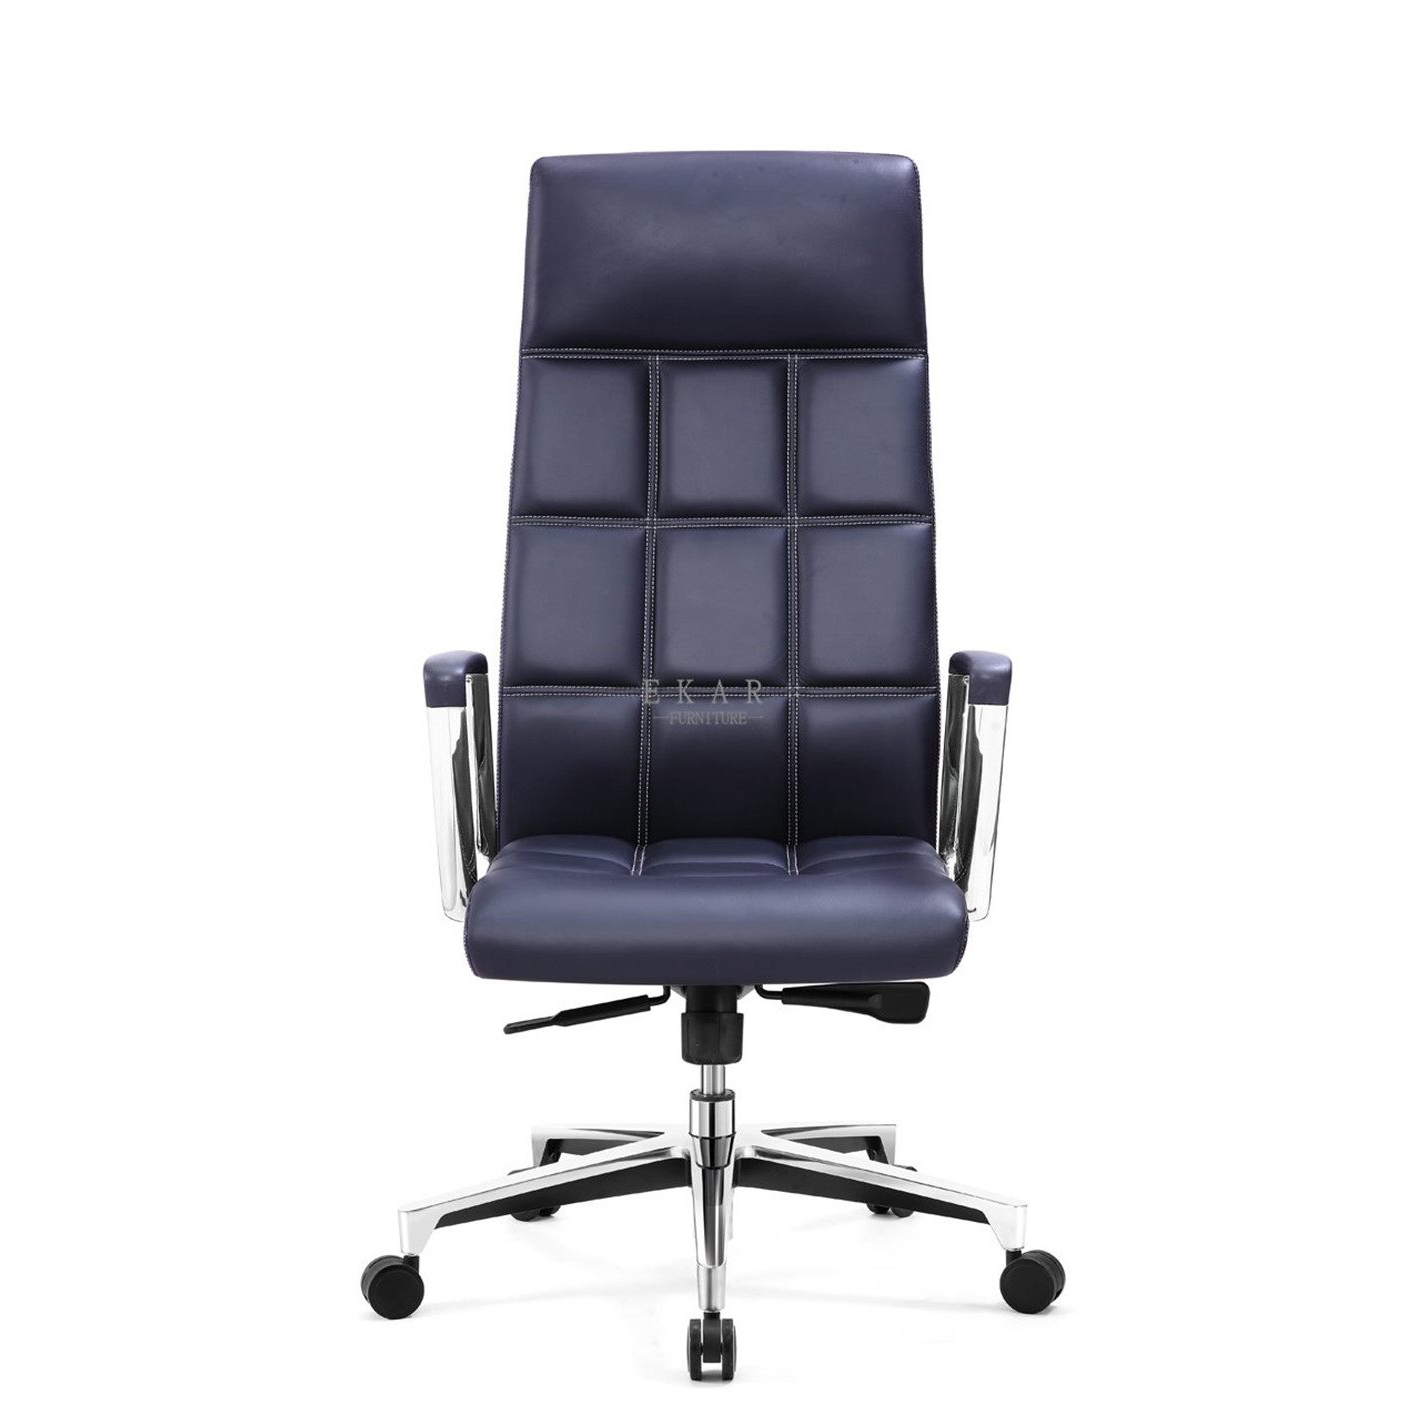 Premium leather ergonomic seating